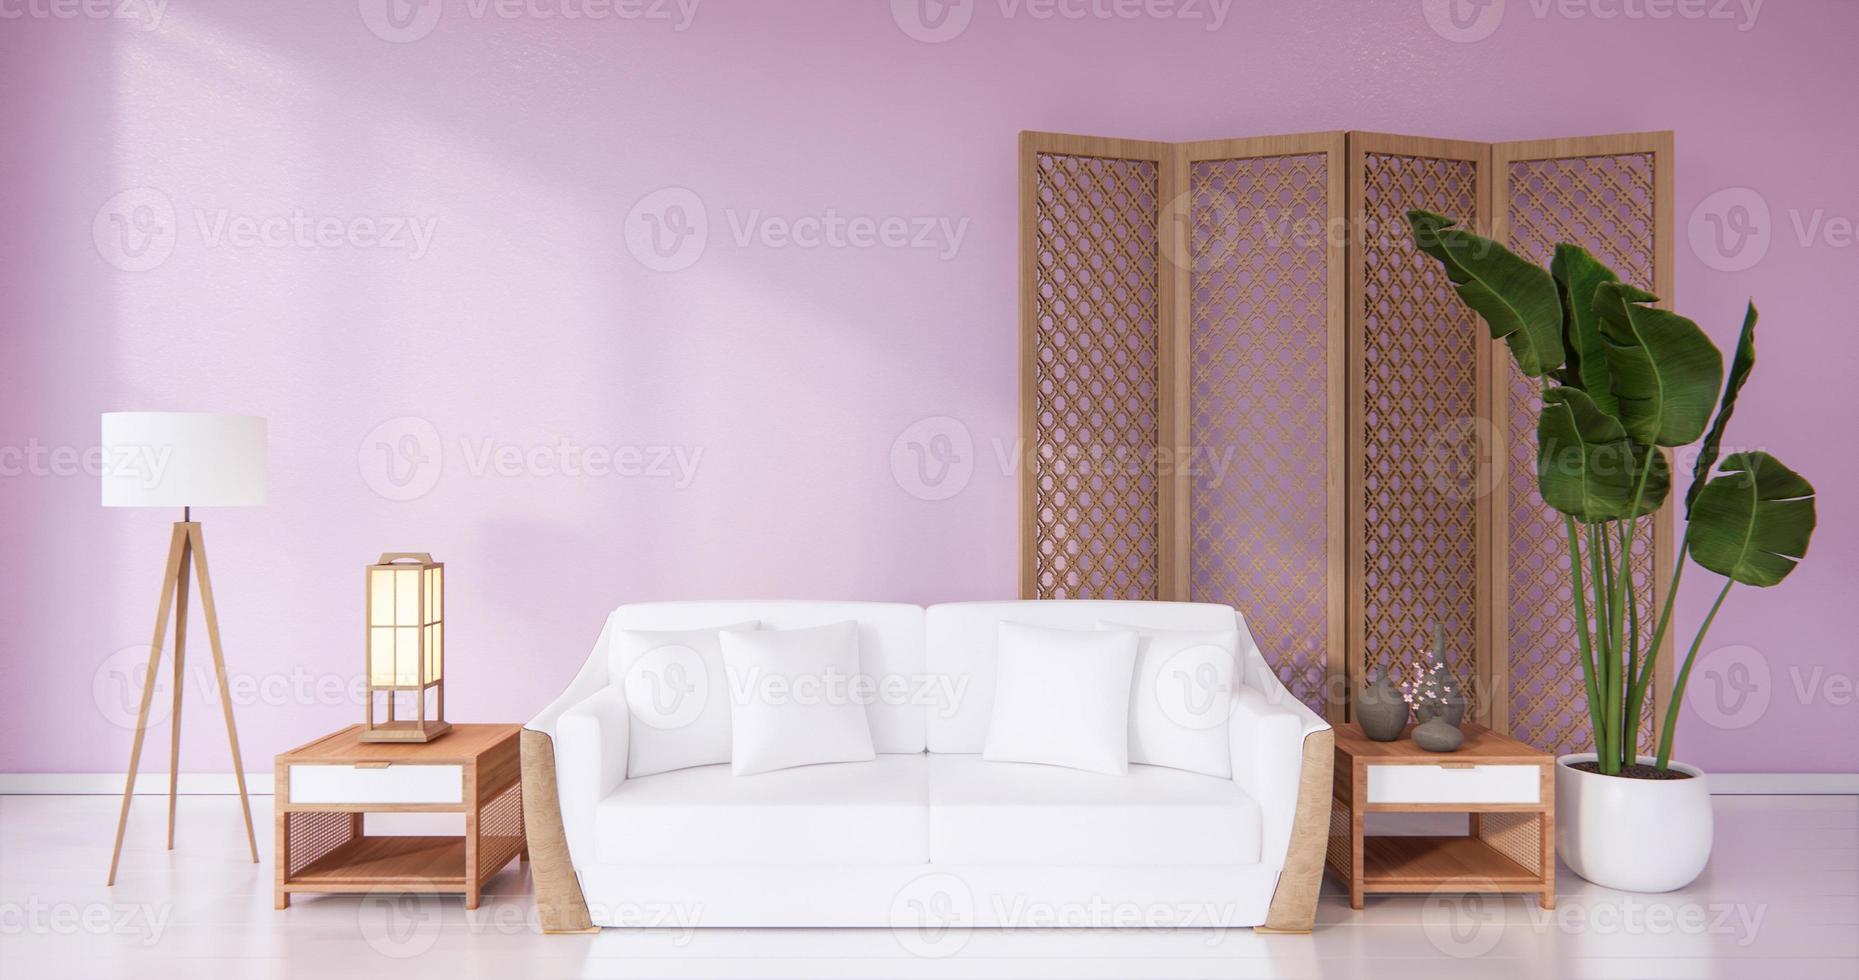 fauteuil blanc dans le salon, murs roses - style rose, rendu 3d photo